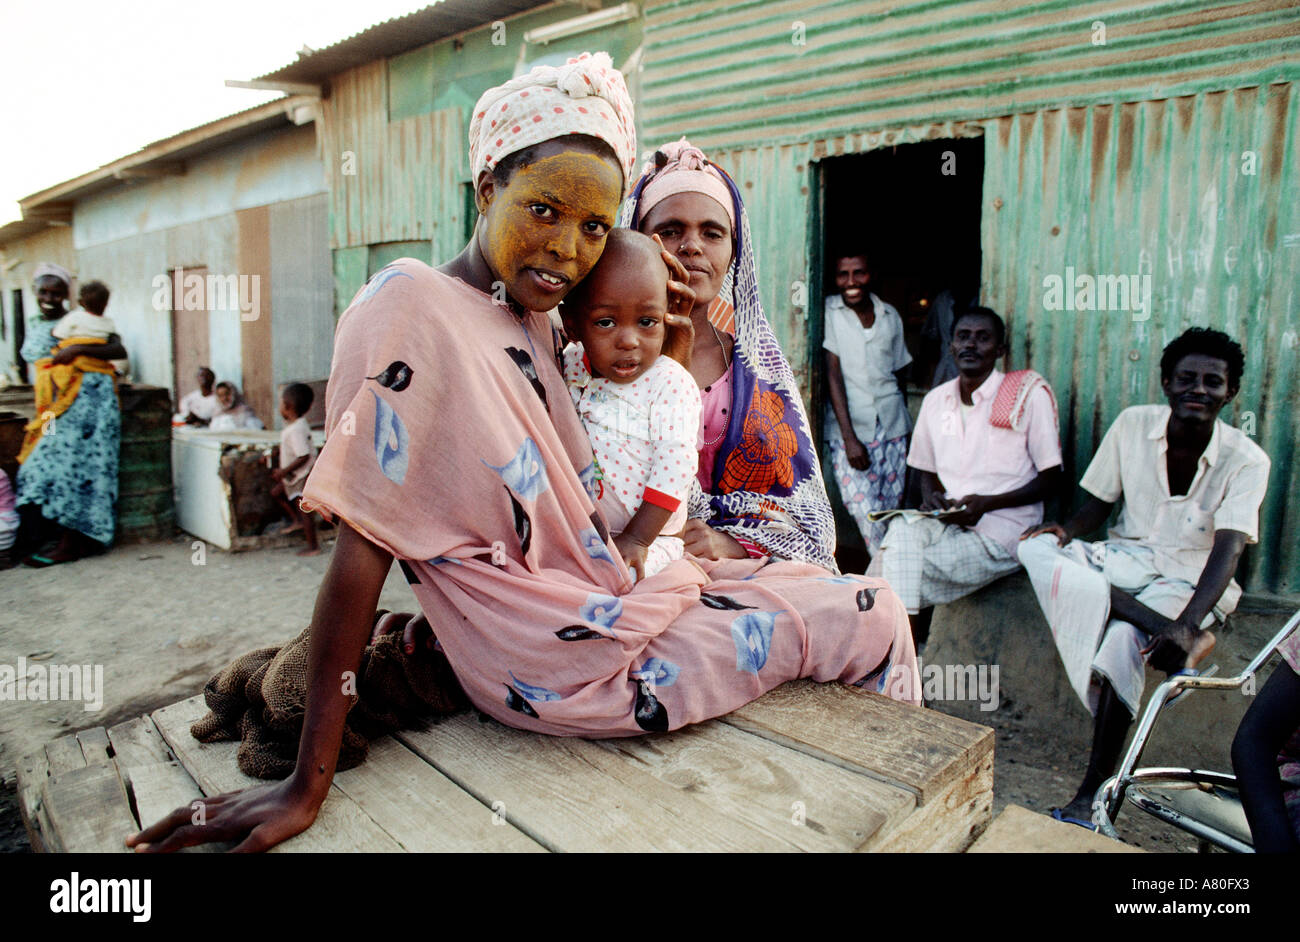 Djibouti, Ingela District, woman of Afars ethnic group in Djibouti Stock Photo